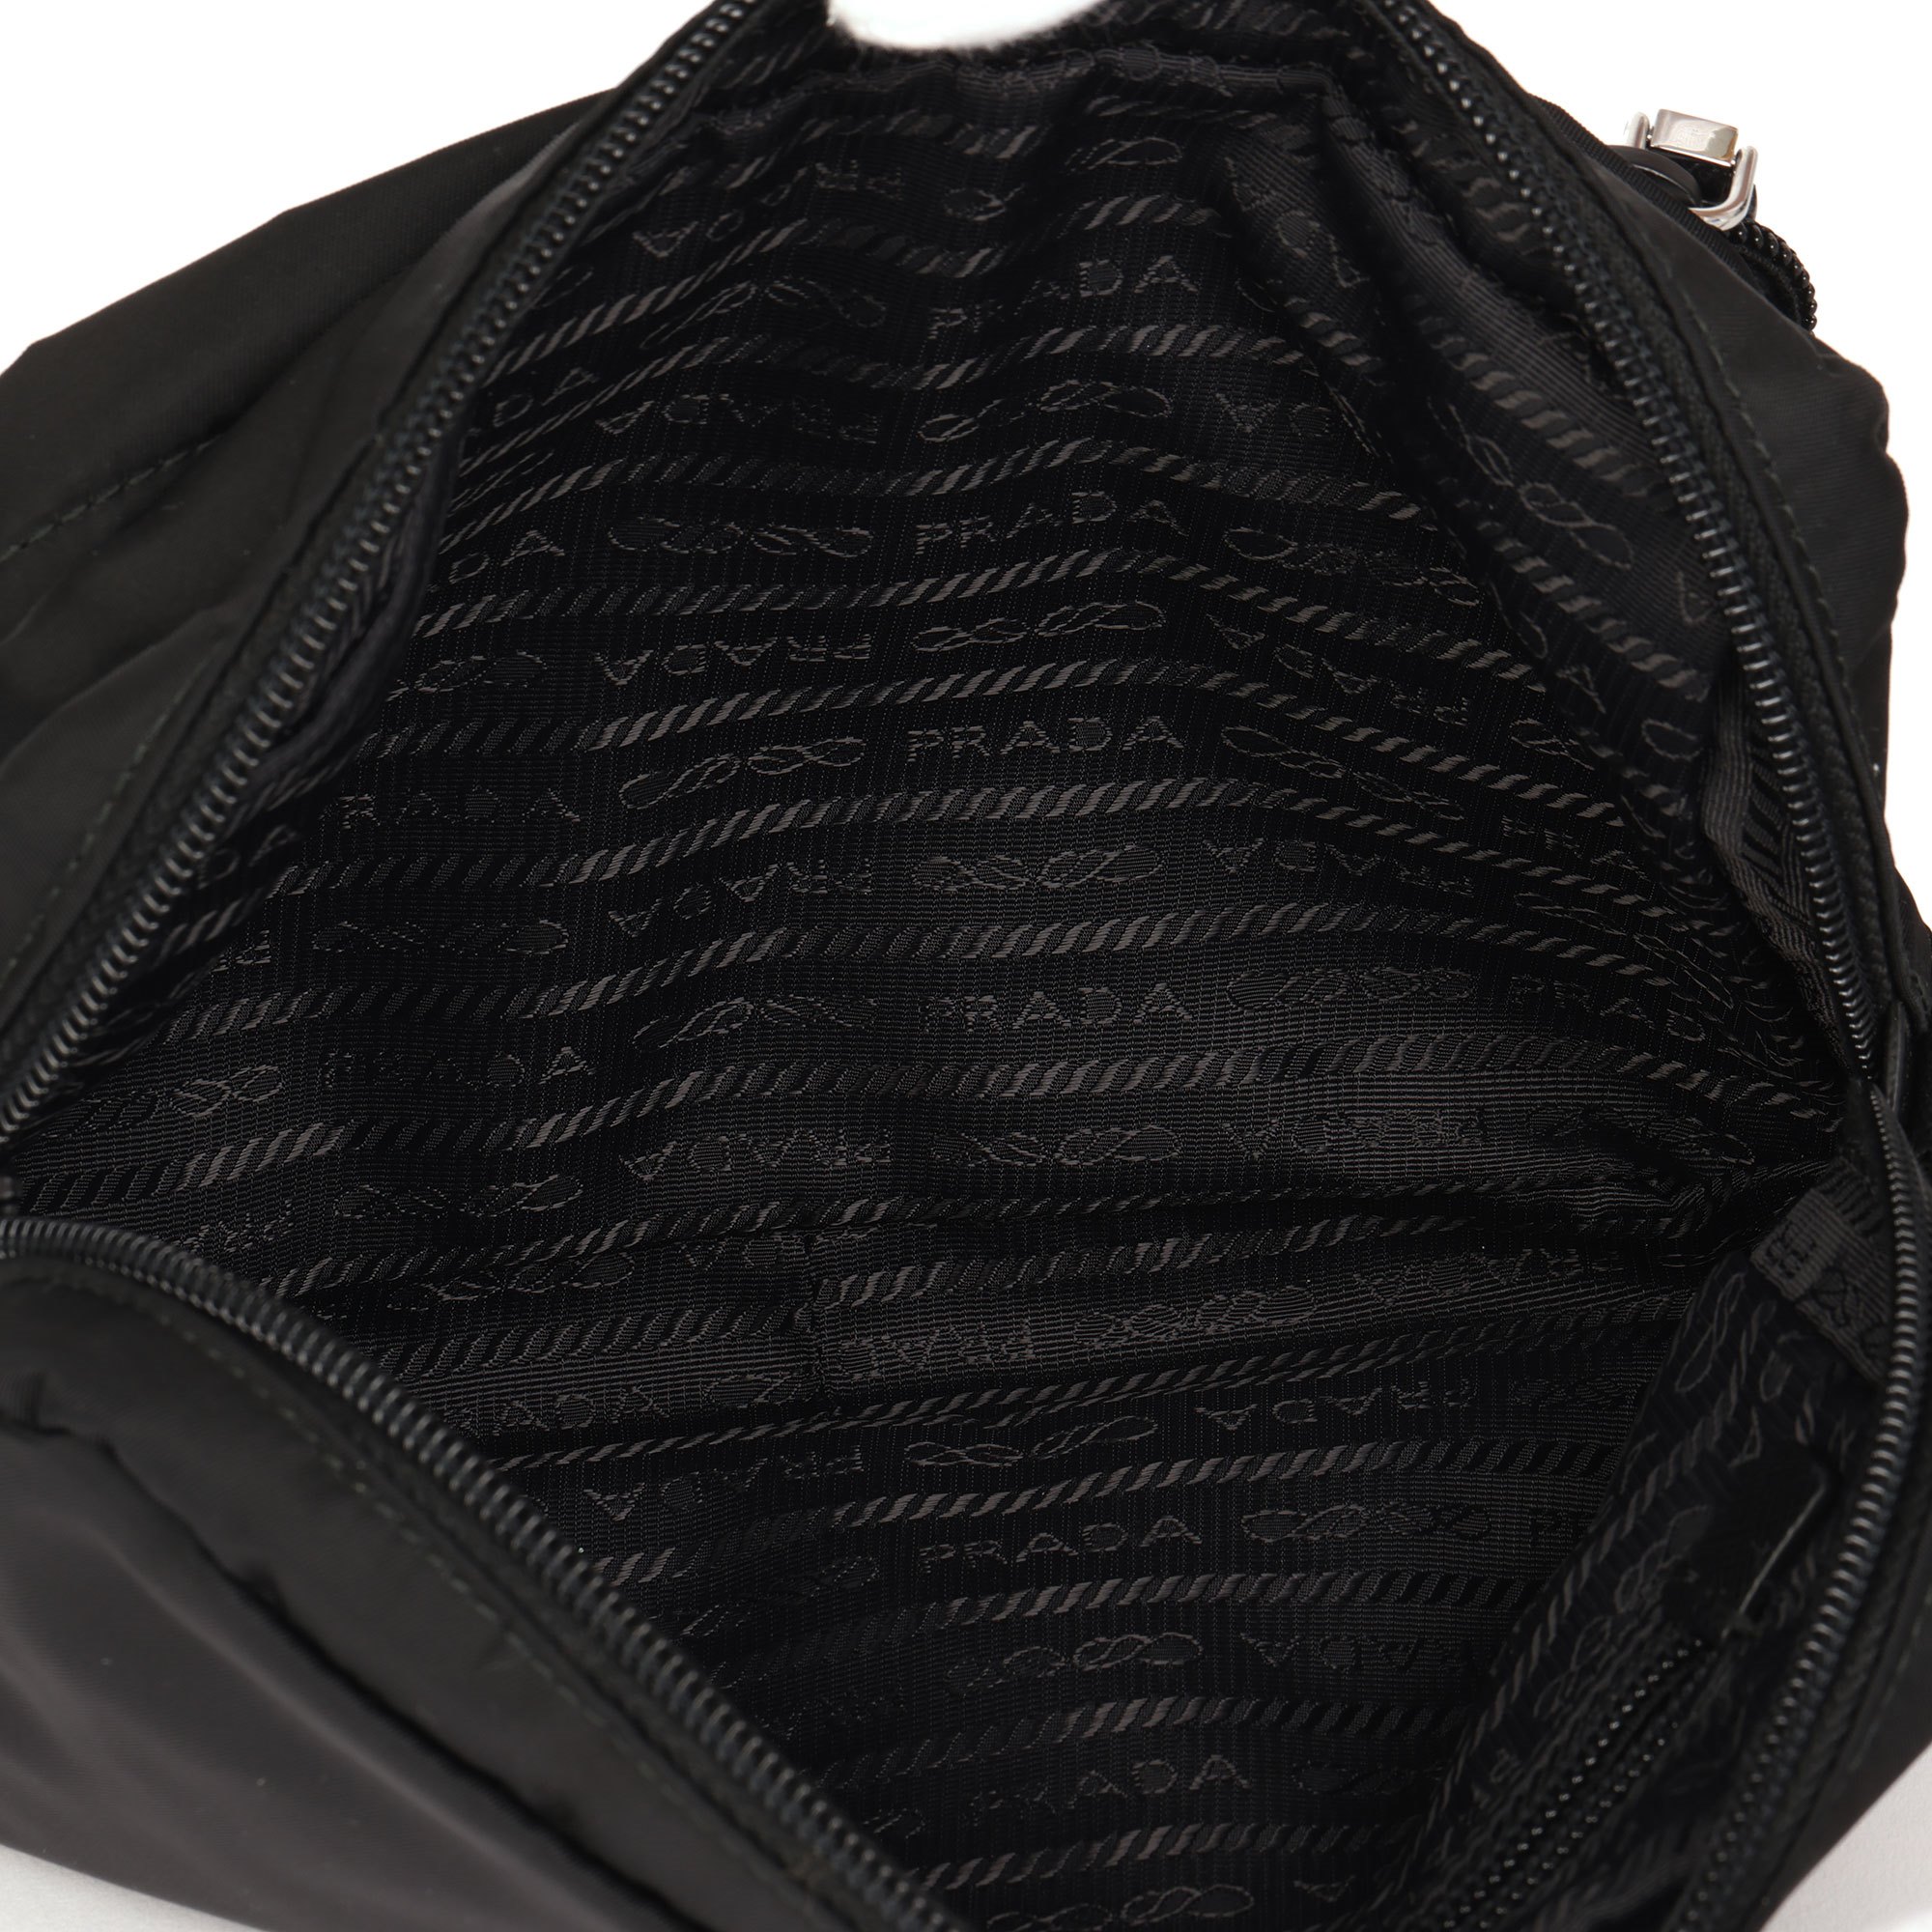 Prada Black Nylon & Saffiano Leather Pouch